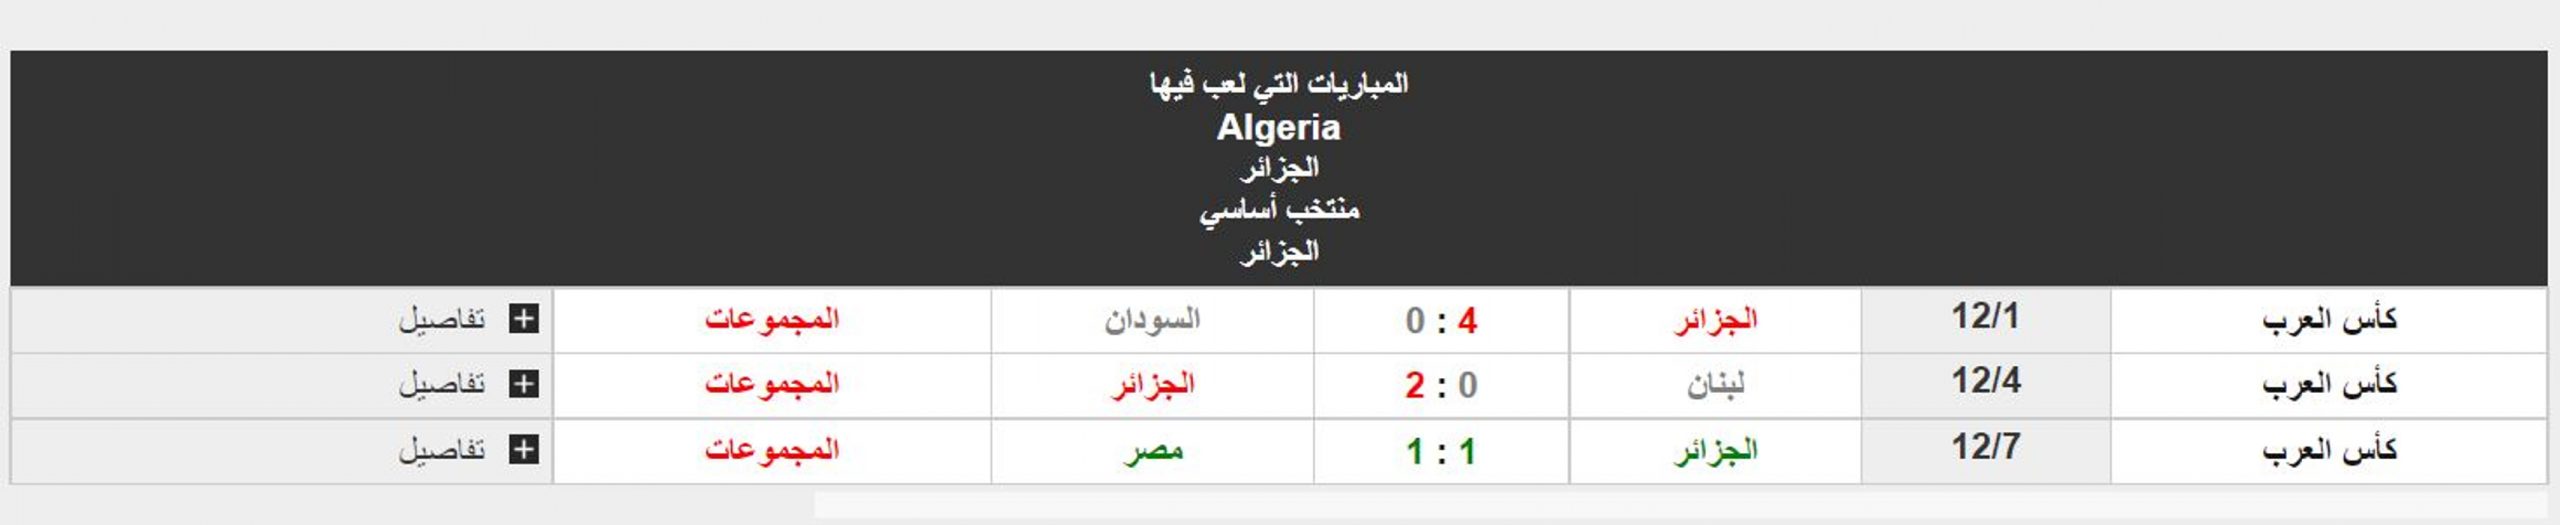  نتائج منتخب الجزائر في دور المجموعات ببطولة كأس العرب